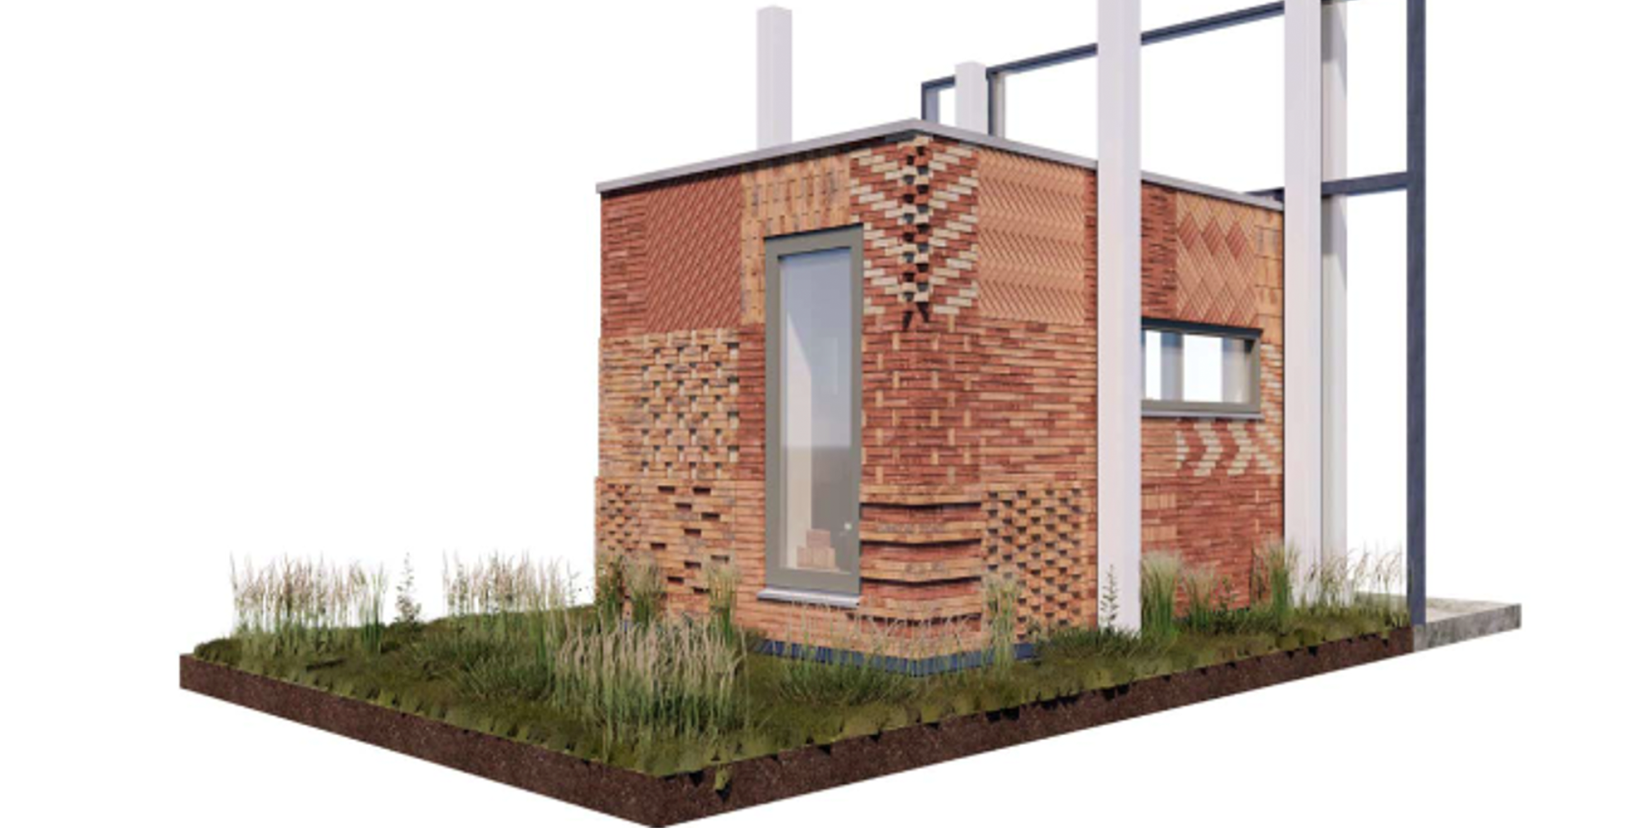 Brick Box – Restklezoorbox – Roffaa architectuur